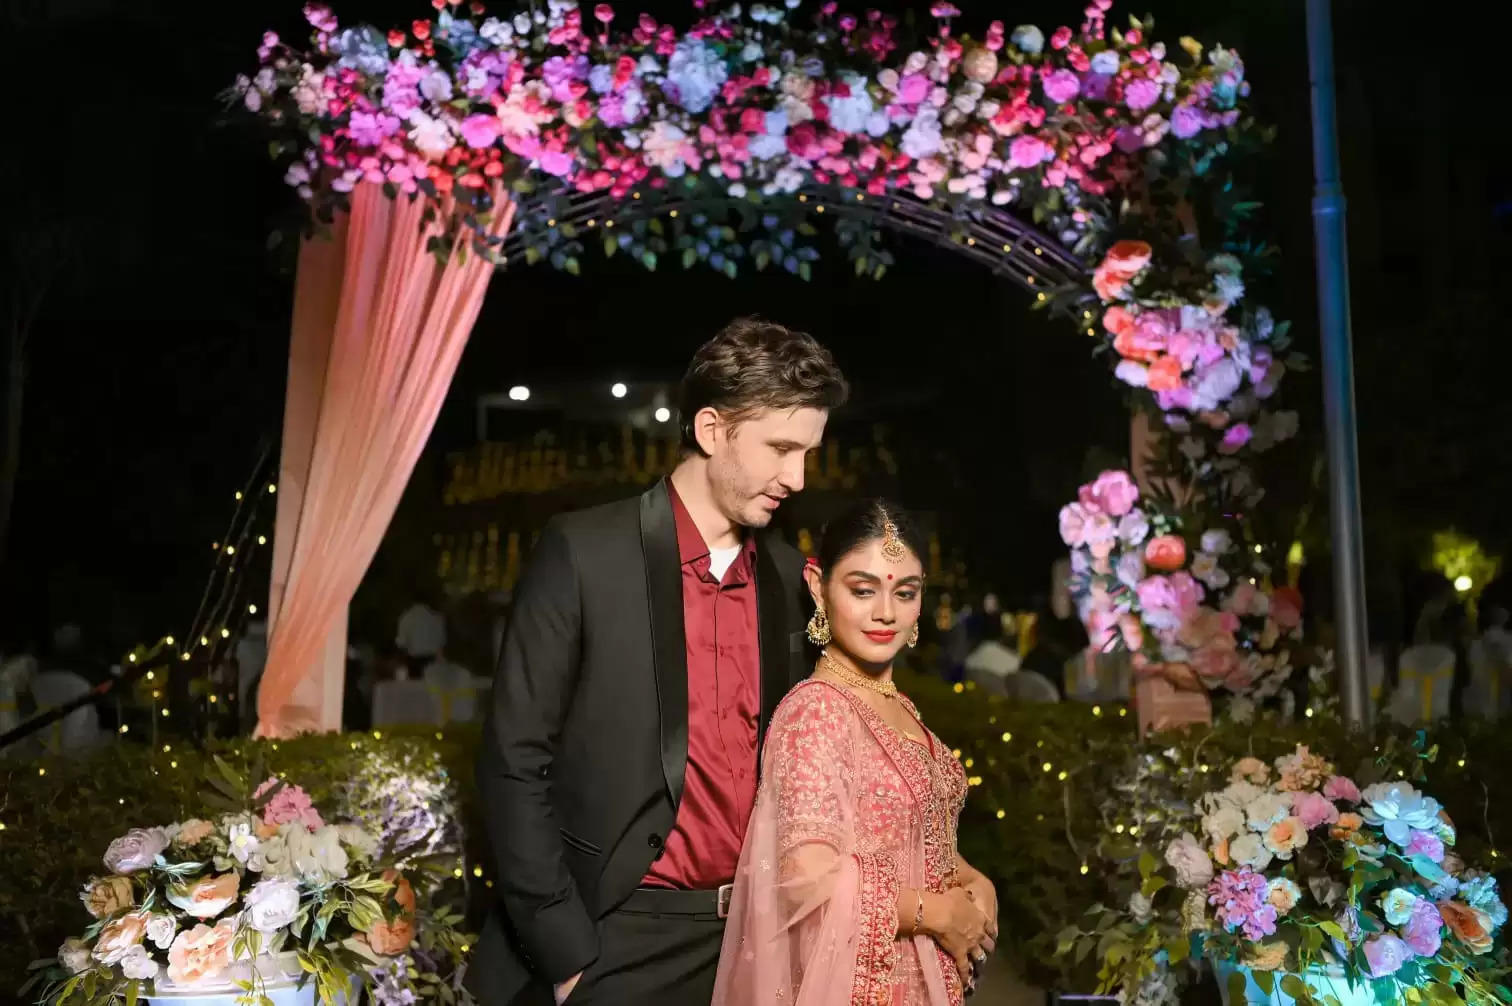 श्रीजिता डे और माइकल ब्लोहम-पेप ने कोलकाता में रखा शादी का रिसेप्शन